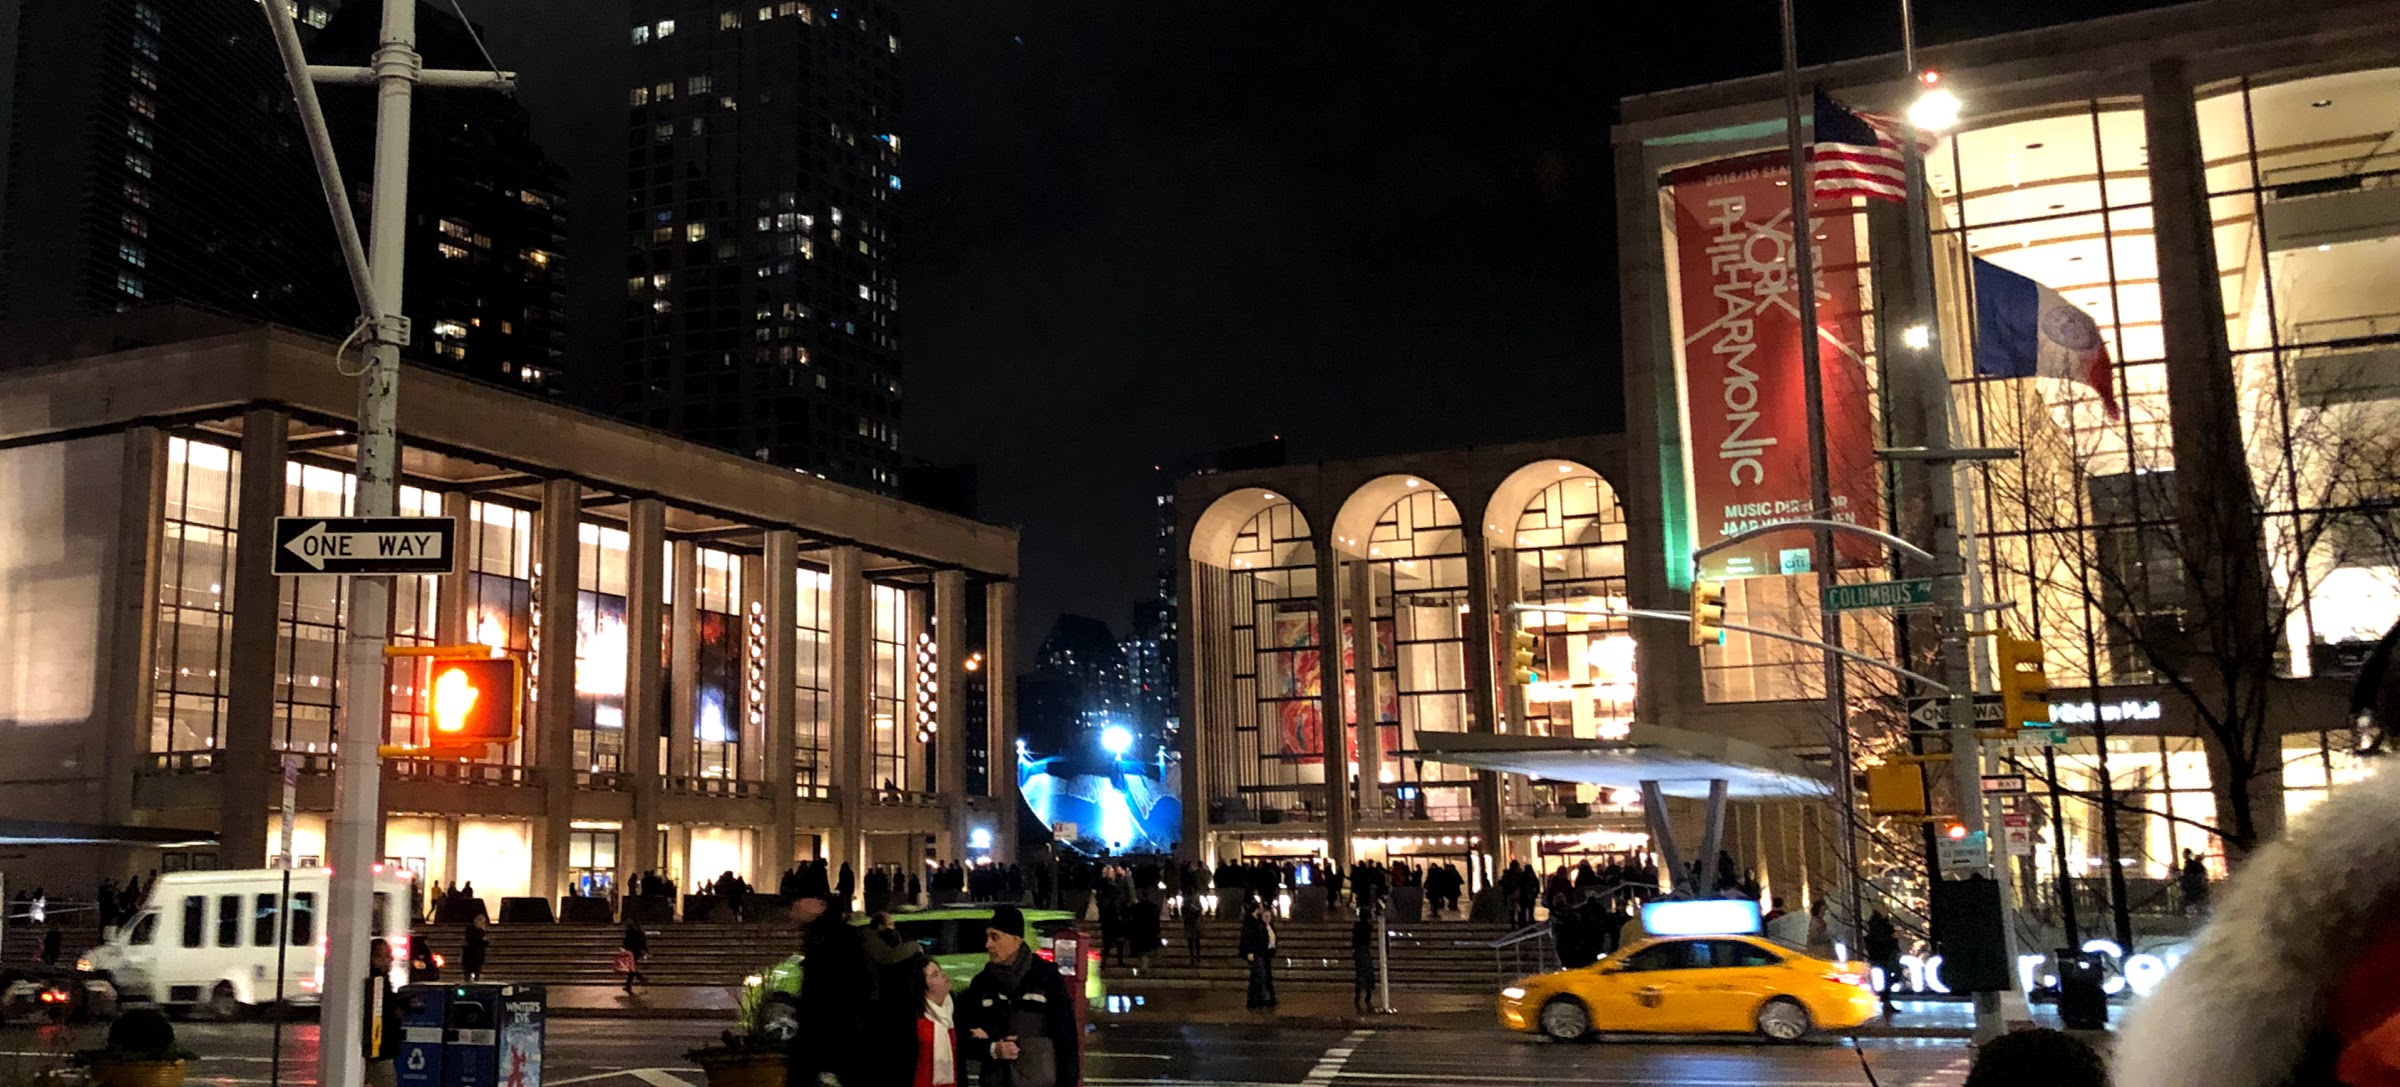 Lincoln Center 2018.jpg